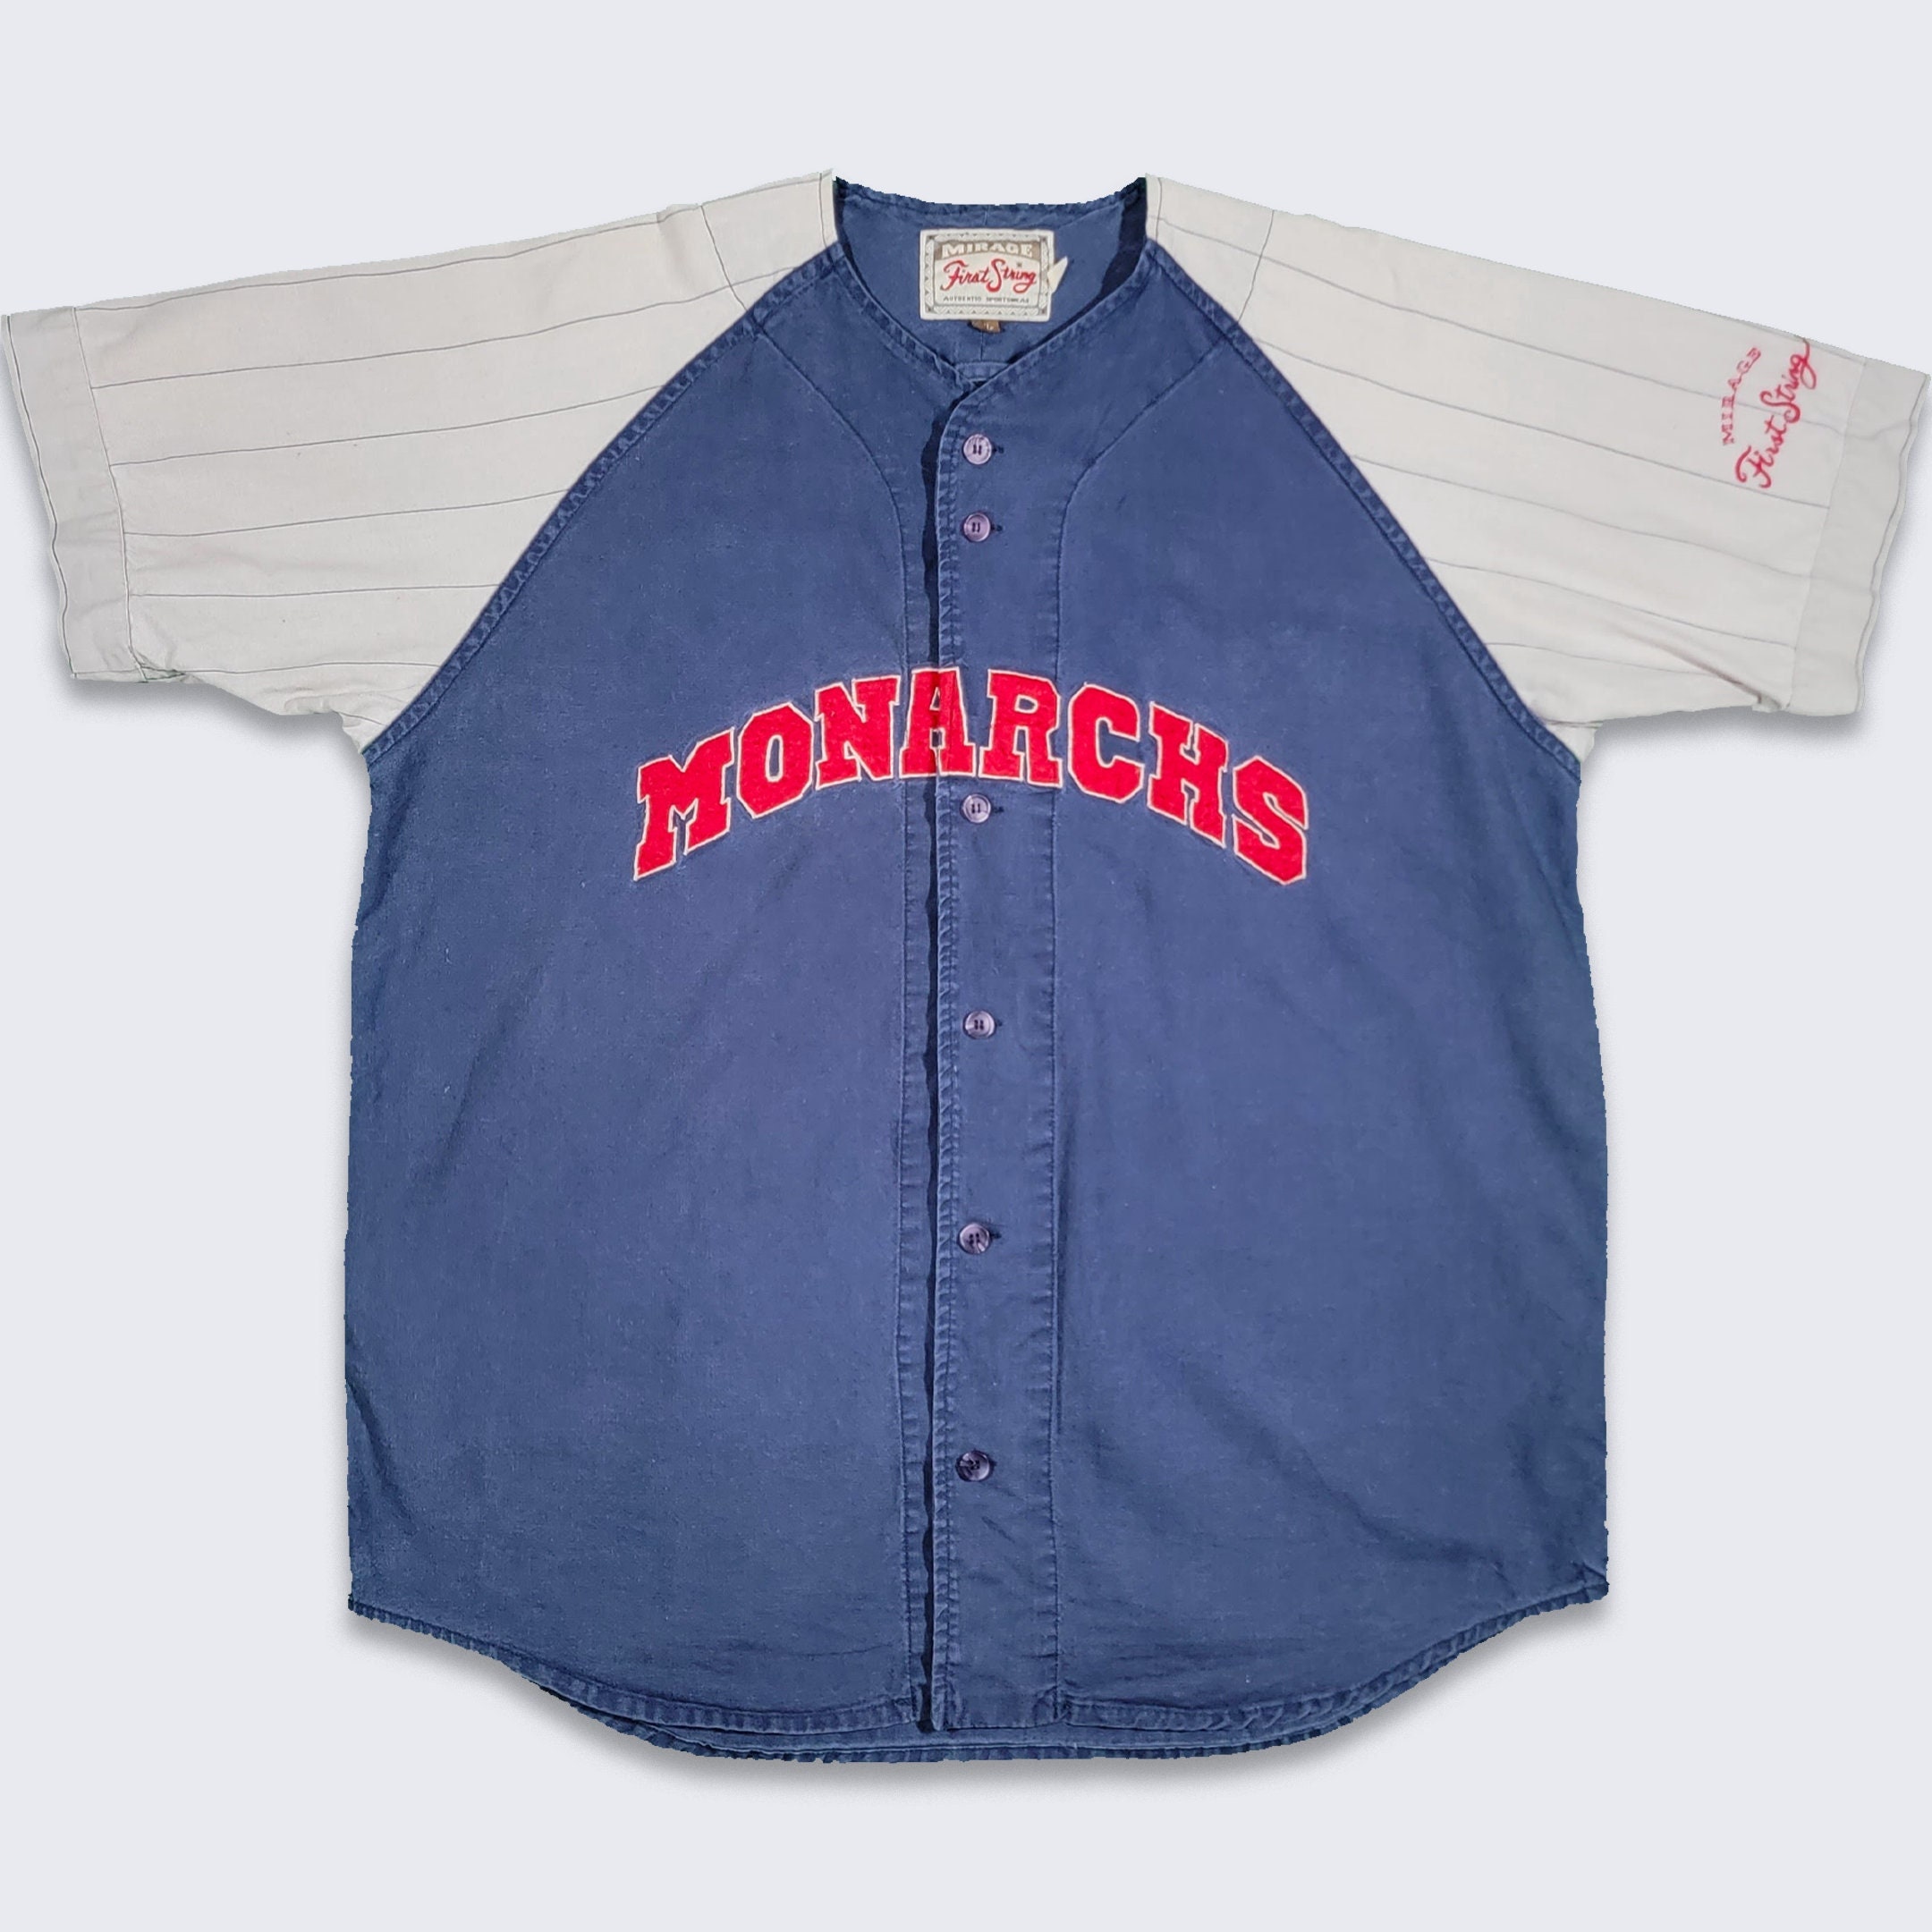 monarchs jersey